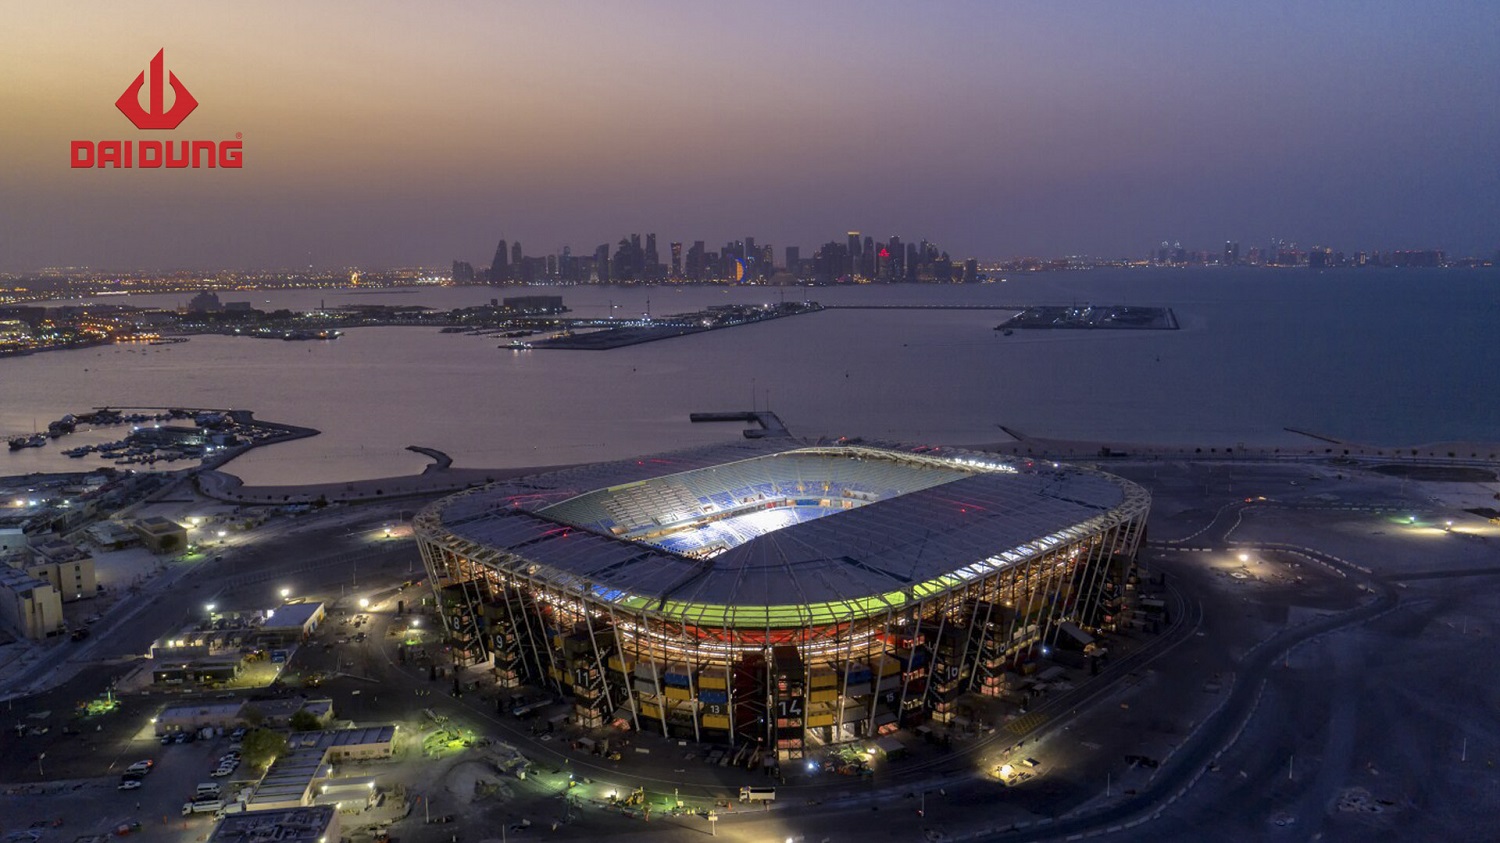 Sân vận động 974 – Ras Abu Aboud (Qatar) có thể tháo lắp di động và tái sử dụng